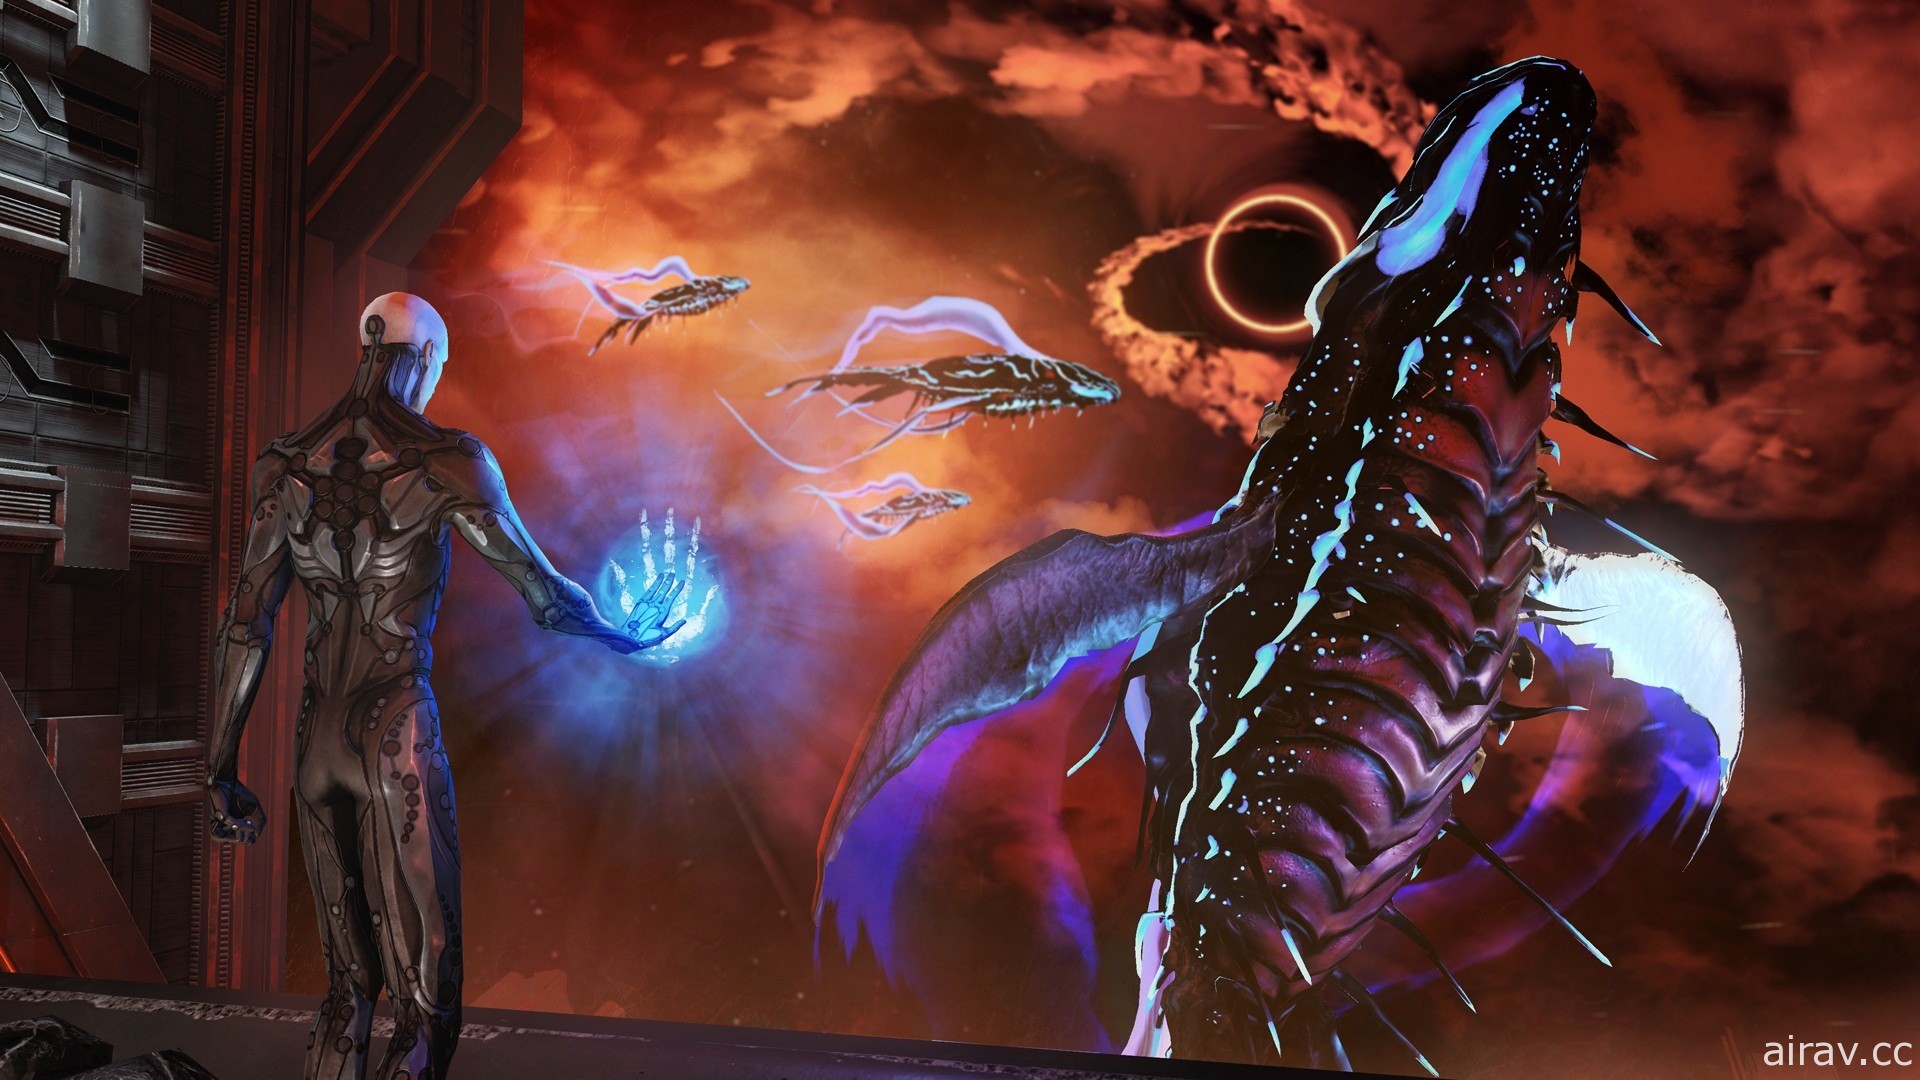 暗黑魂系科幻動作 RPG《地獄尖兵》11 月登陸 PS4 及 Switch 平台